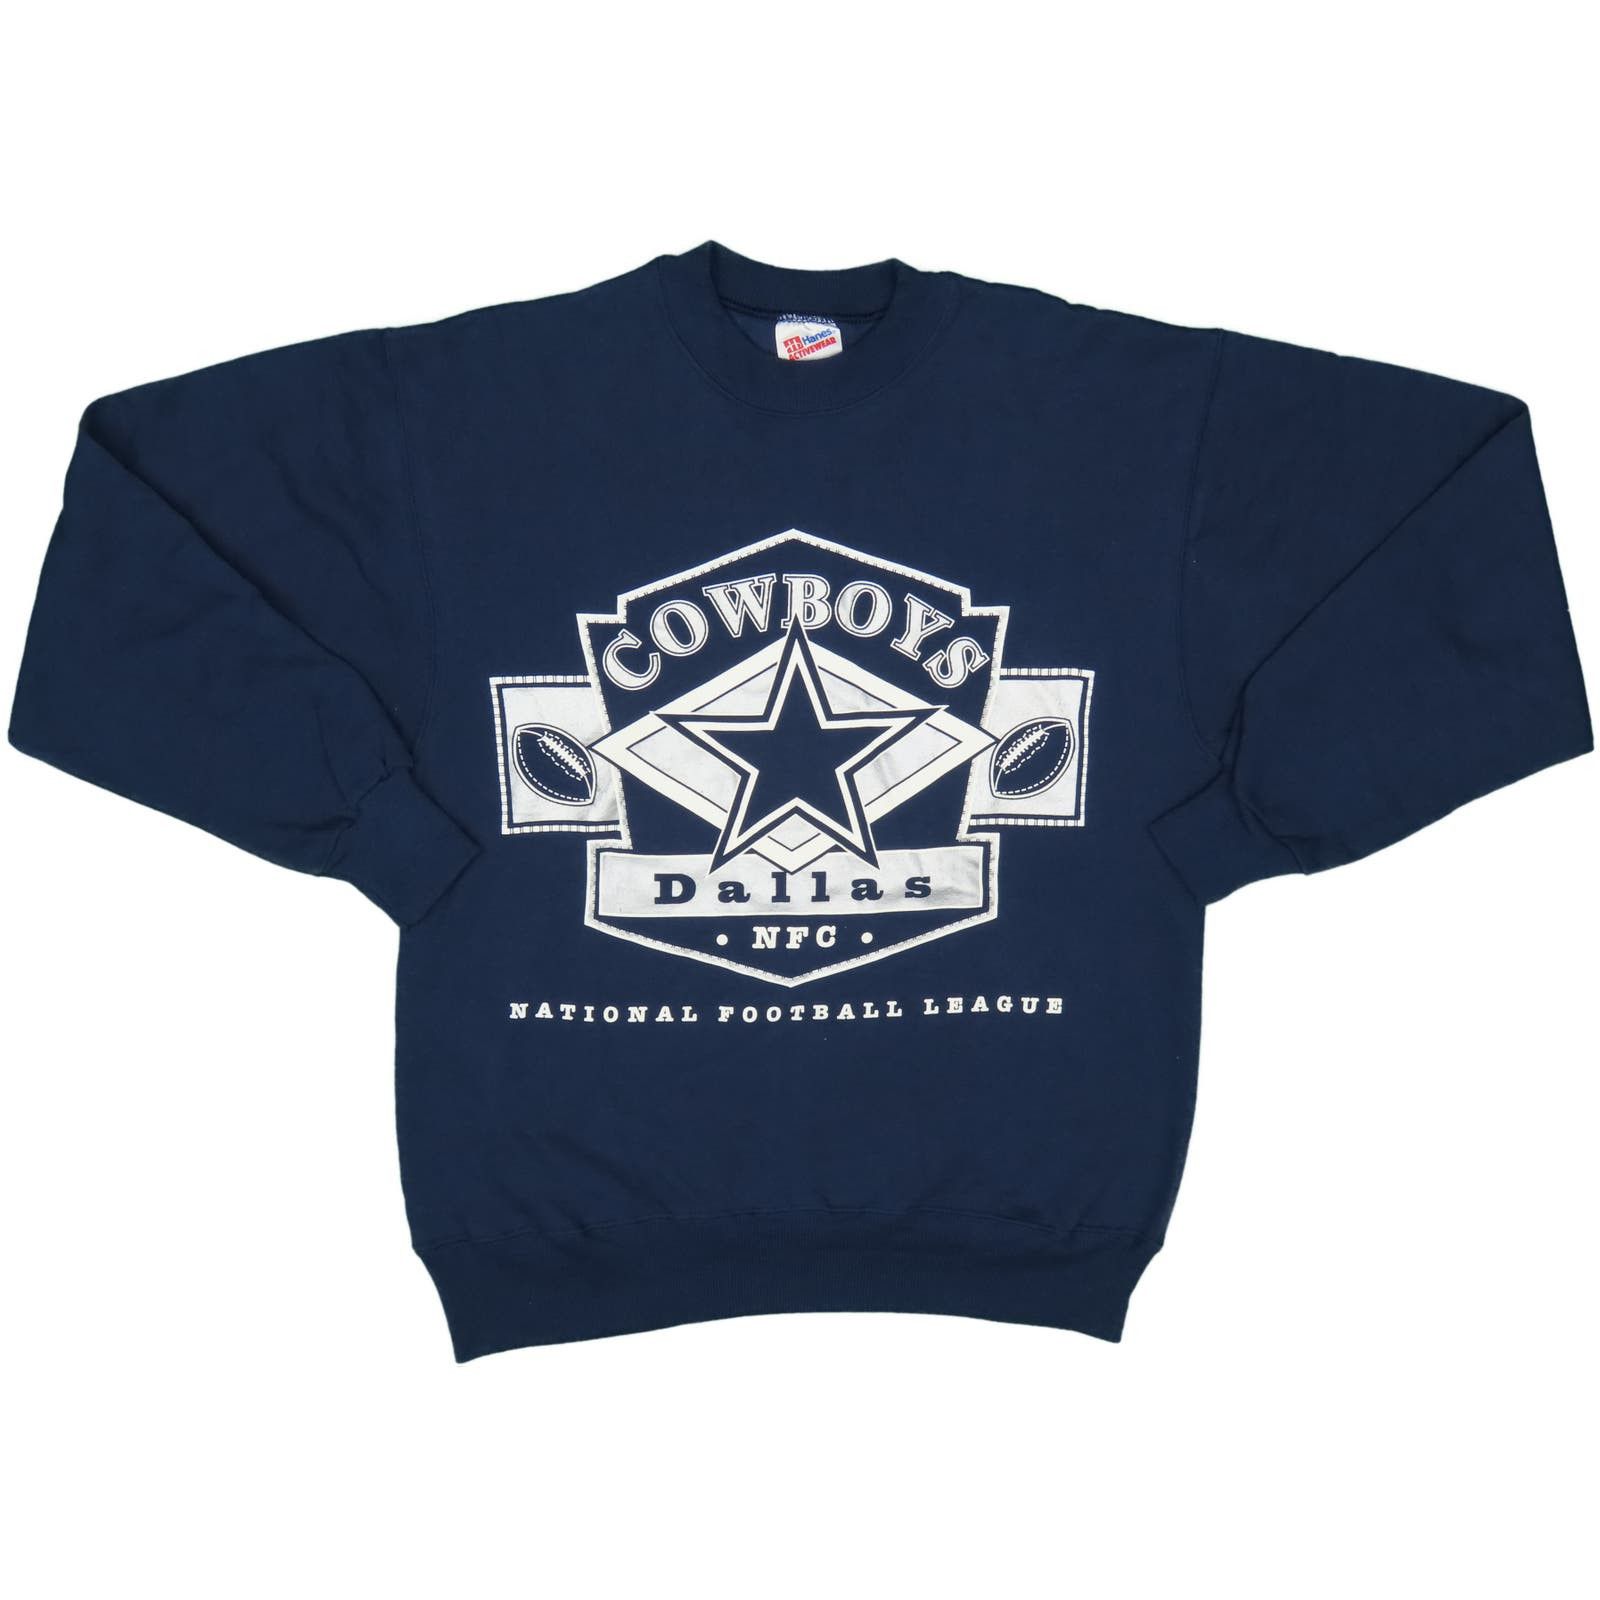 Hanes 90s Vintage Dallas Cowboys Football Crewneck Sweatshirt Size US S / EU 44-46 / 1 - 2 Preview